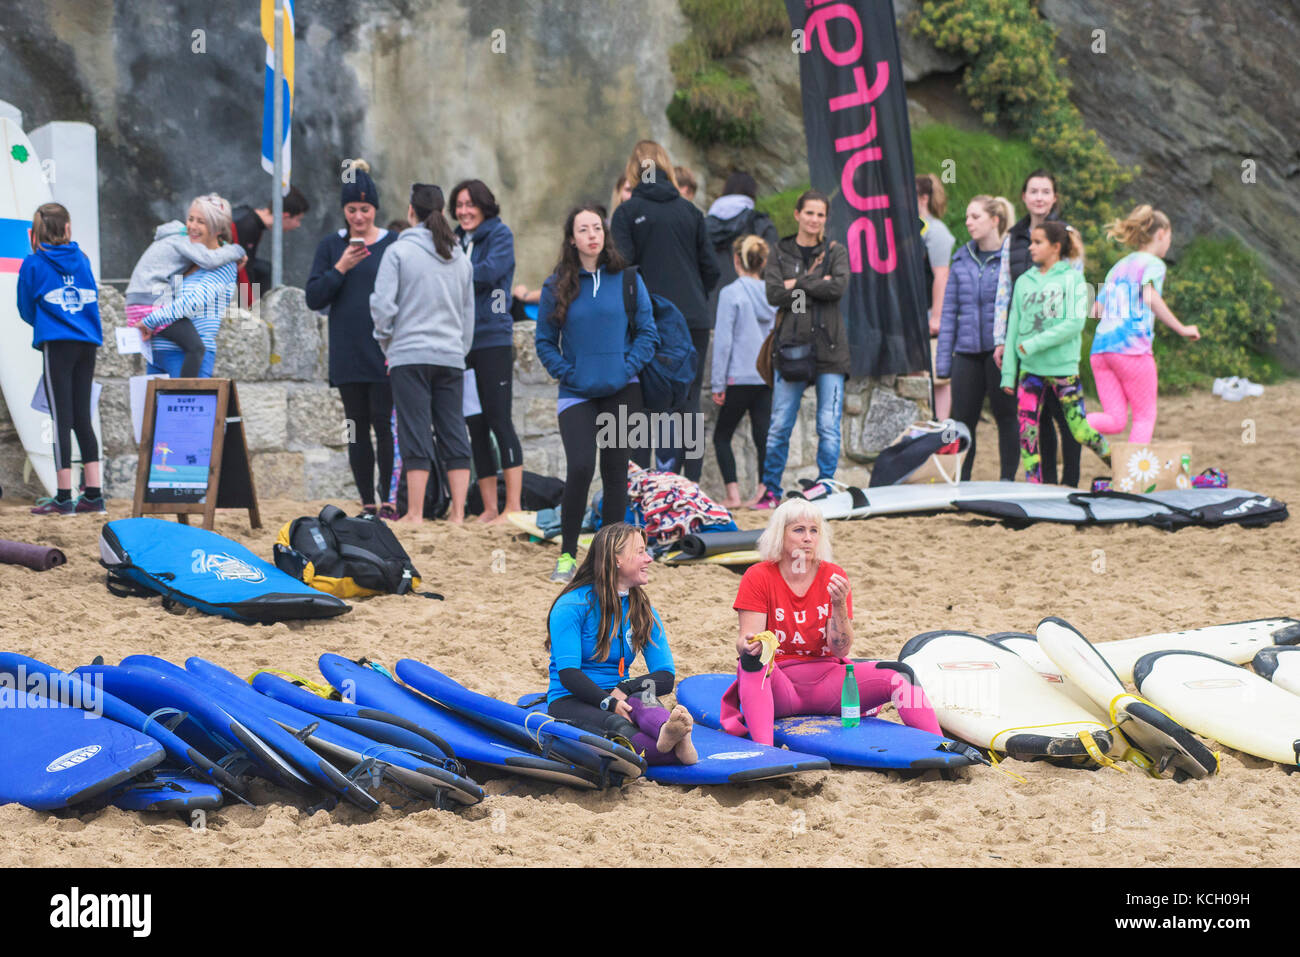 Un raduno di donne al Surf Betty's Festival - un womens' festival tenutosi a Newquay a conferire maggiore potere alle donne attraverso il surf e il fitness. La Cornovaglia. Foto Stock